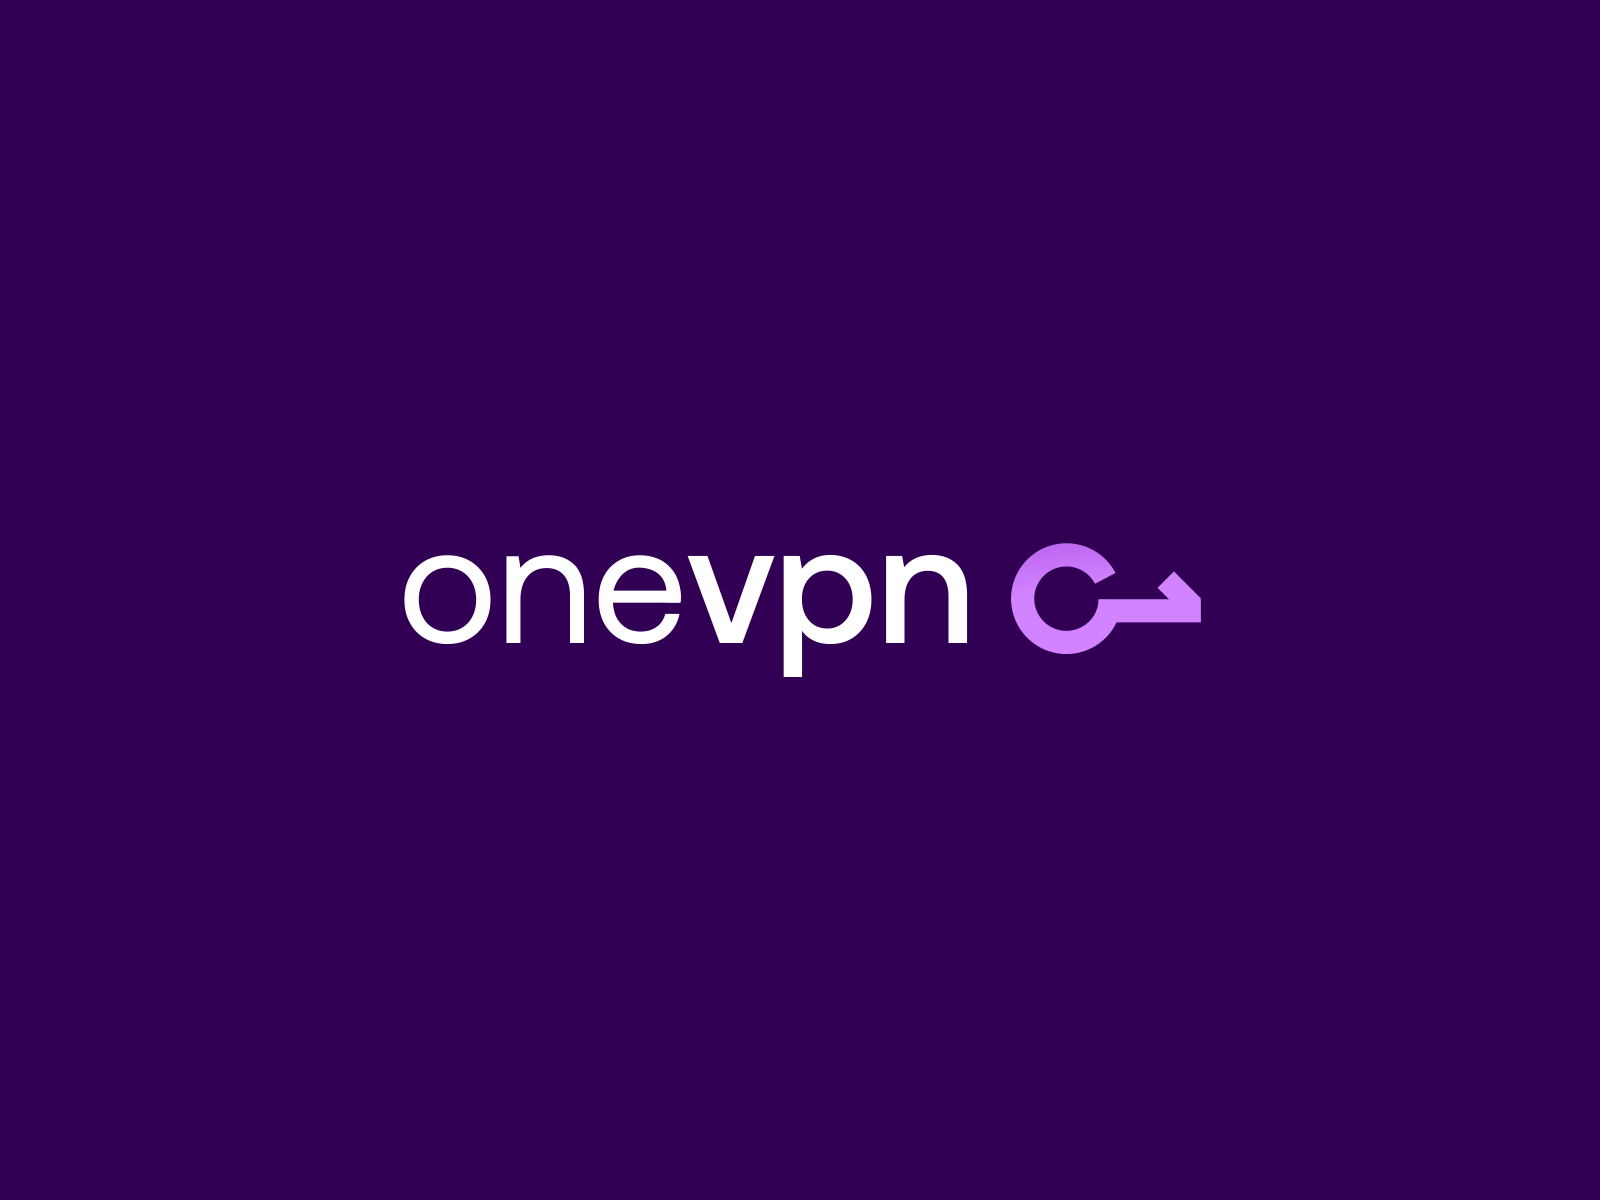 Onevpn logo animation animated logo animation design icon logo logo animation logo motion logoanimation motion motion graphics